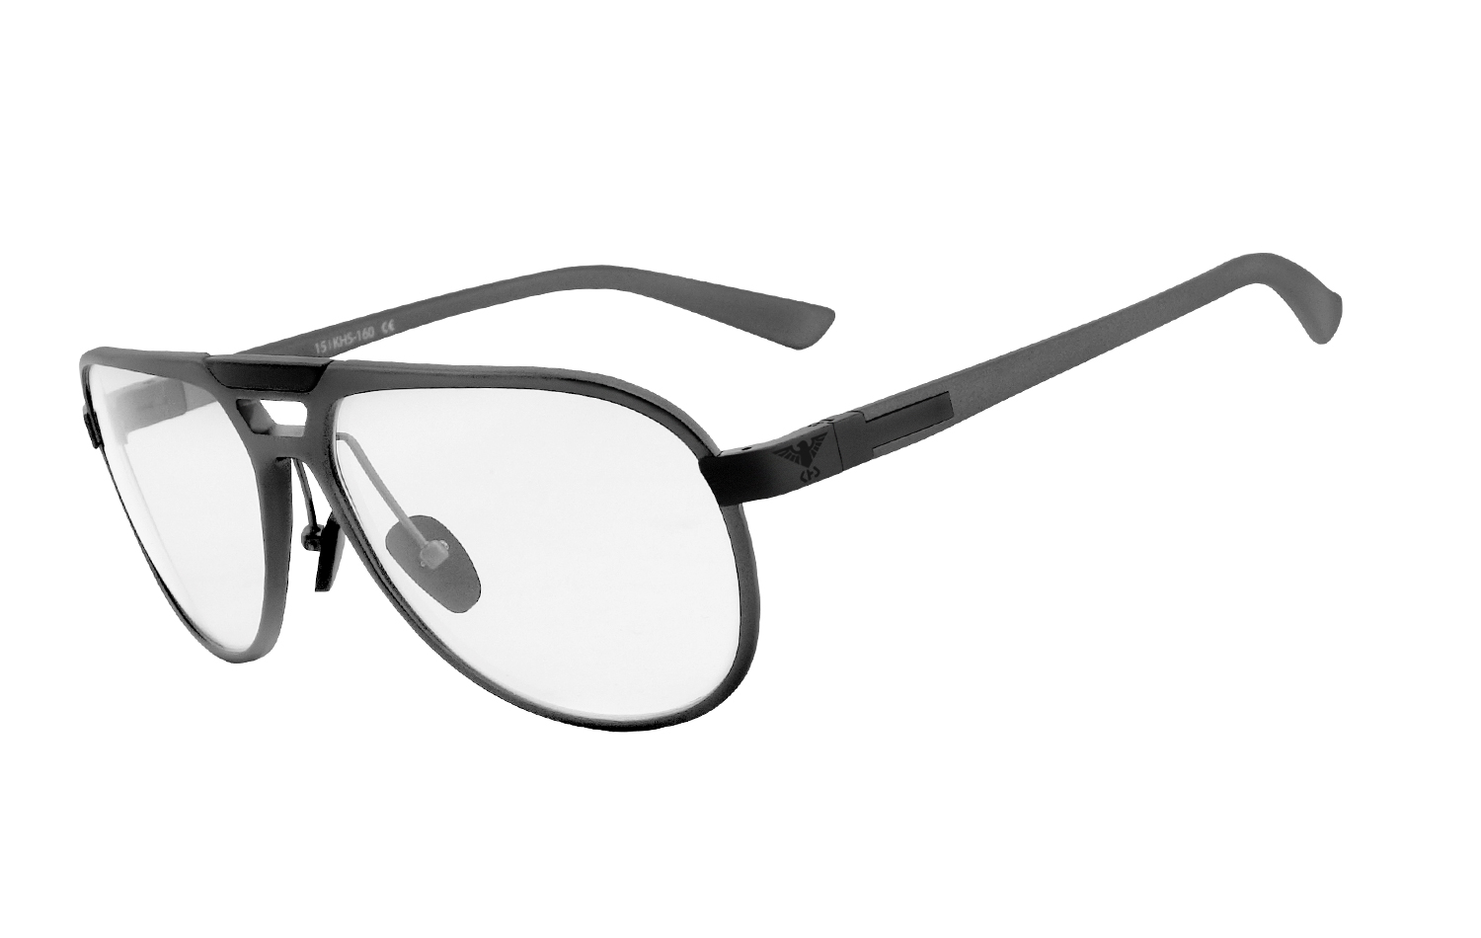 KHS® - Tactical Eyewear | KHS-160g-n  Brille, Brillengestell, Brillenfassung, Korrekturbrille, Korrekturfassung